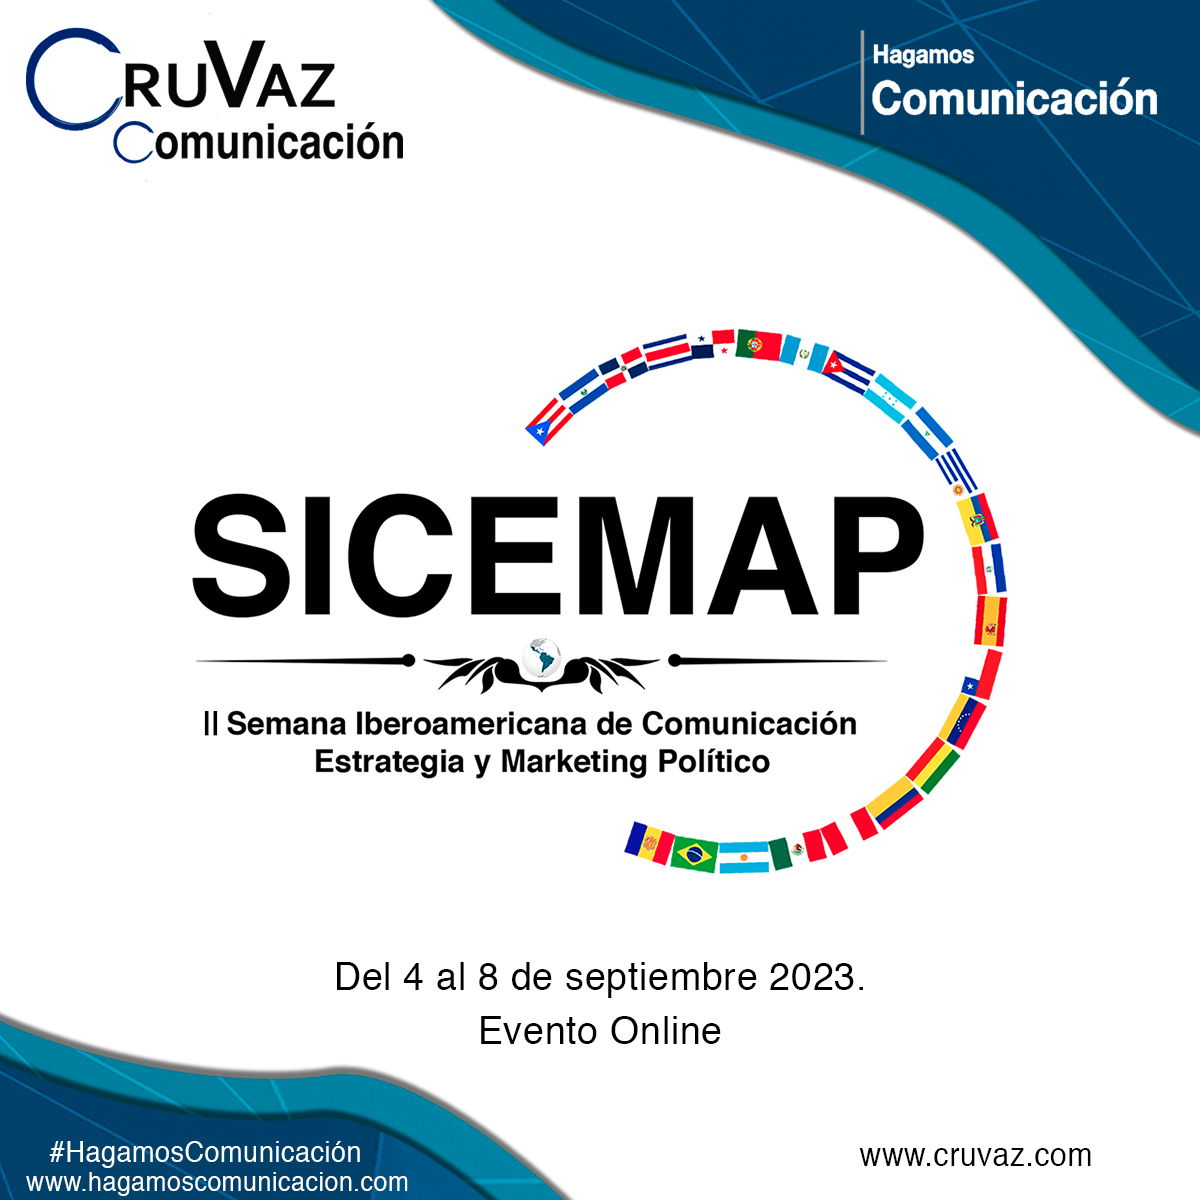 II Semana Iberoamericana de Comunicación, Estrategia y Marketing Político